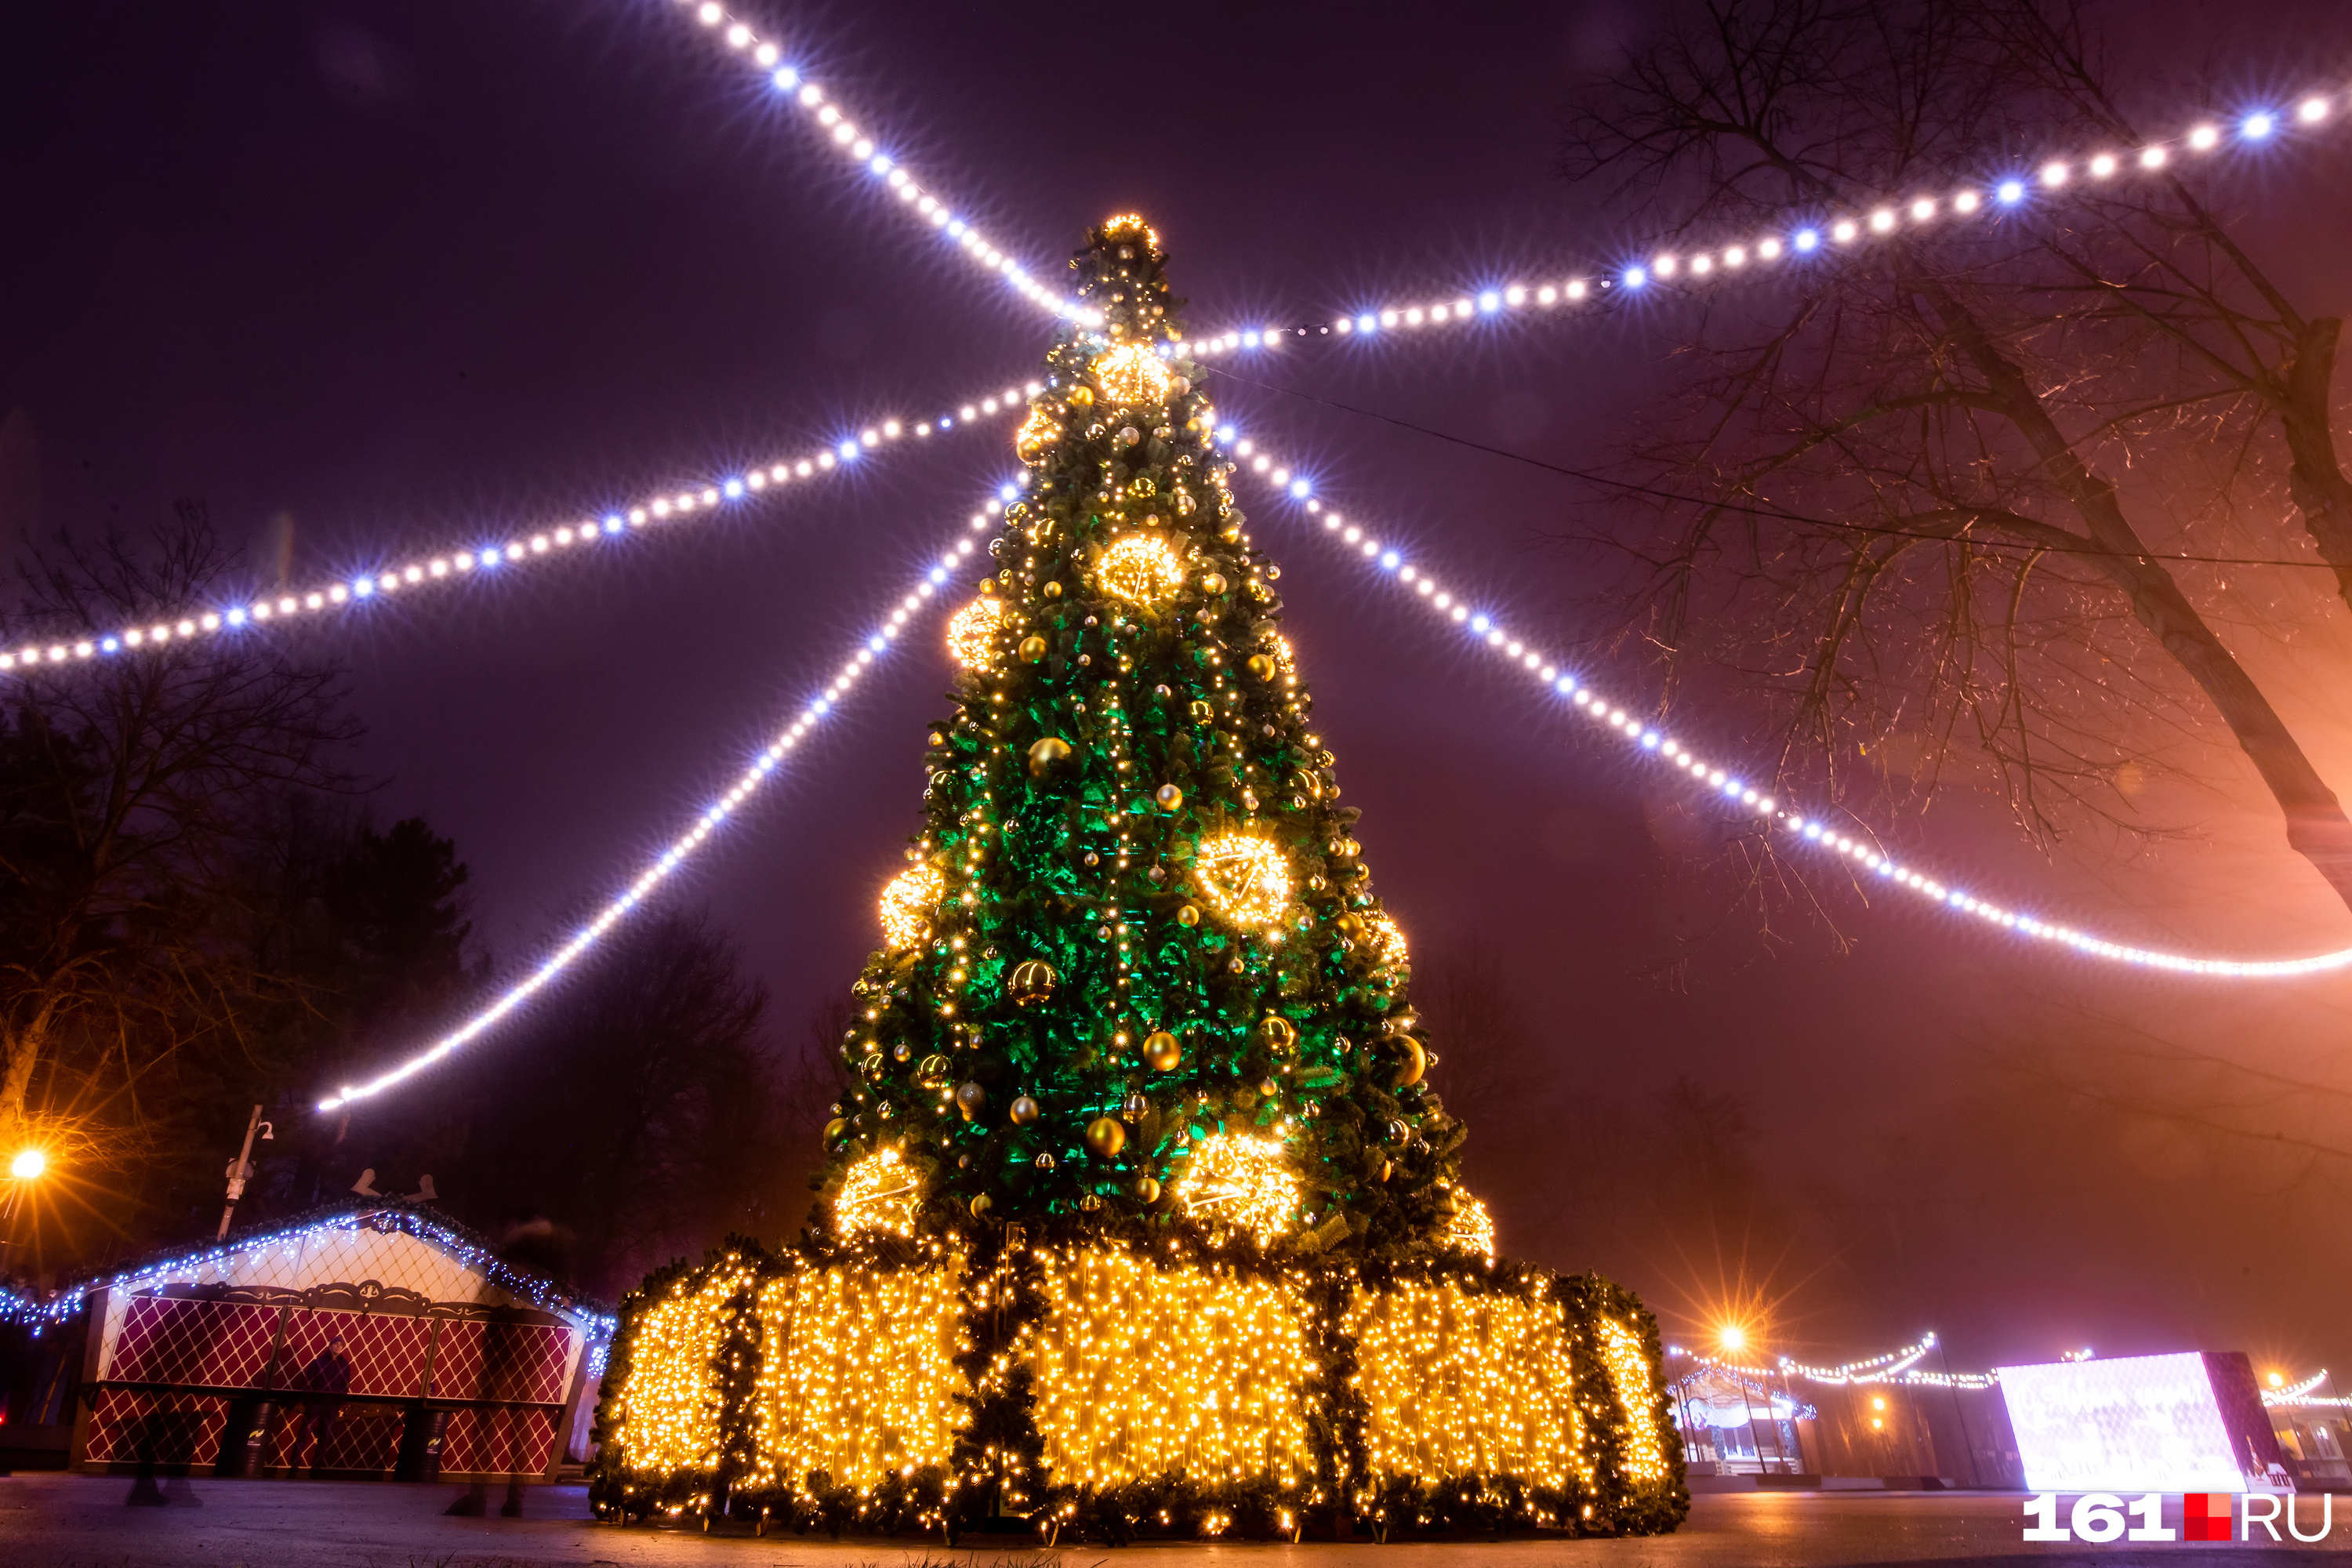 Городская елка — идеальный фон для новогоднего селфи